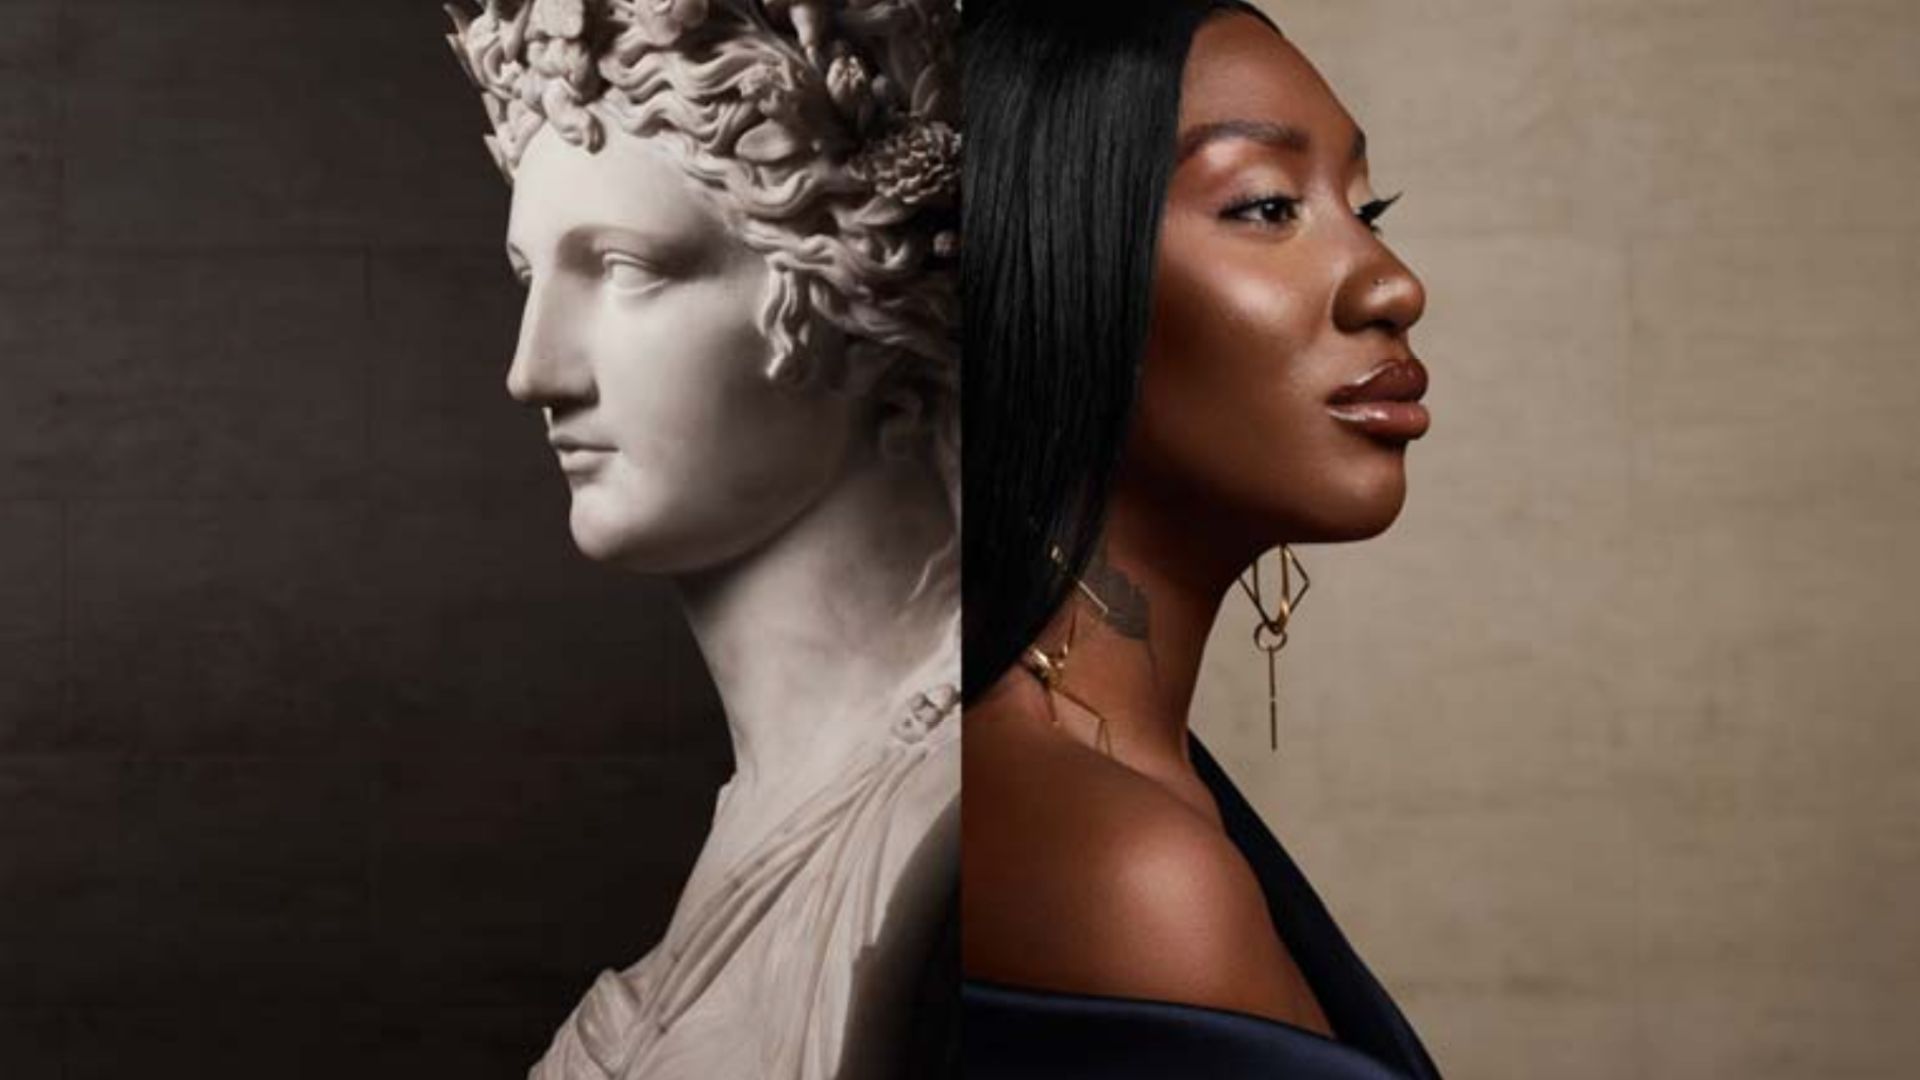 La poétesse grecque antique Corine et Aya Nakamura, photographiées par Sølve Sundsbø pour Lancôme x Le Louvre // Source : Lancôme x Le Louvre